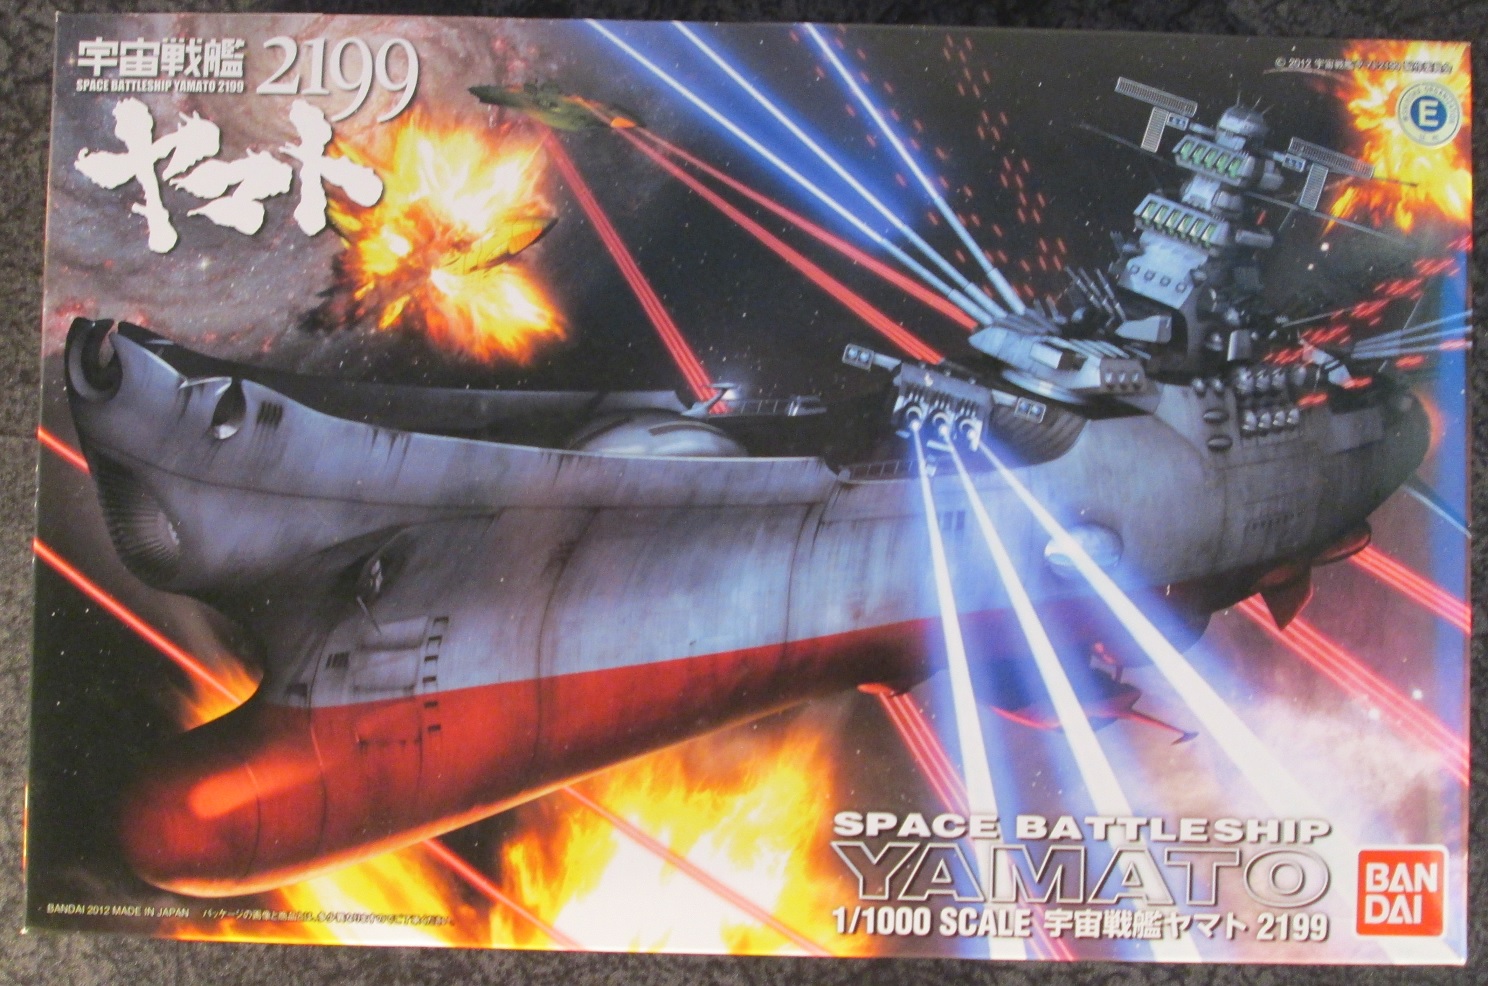 Yamato Star Blazers 2199-1/500 Space Battleship Yamato Modell Kit Bandai 